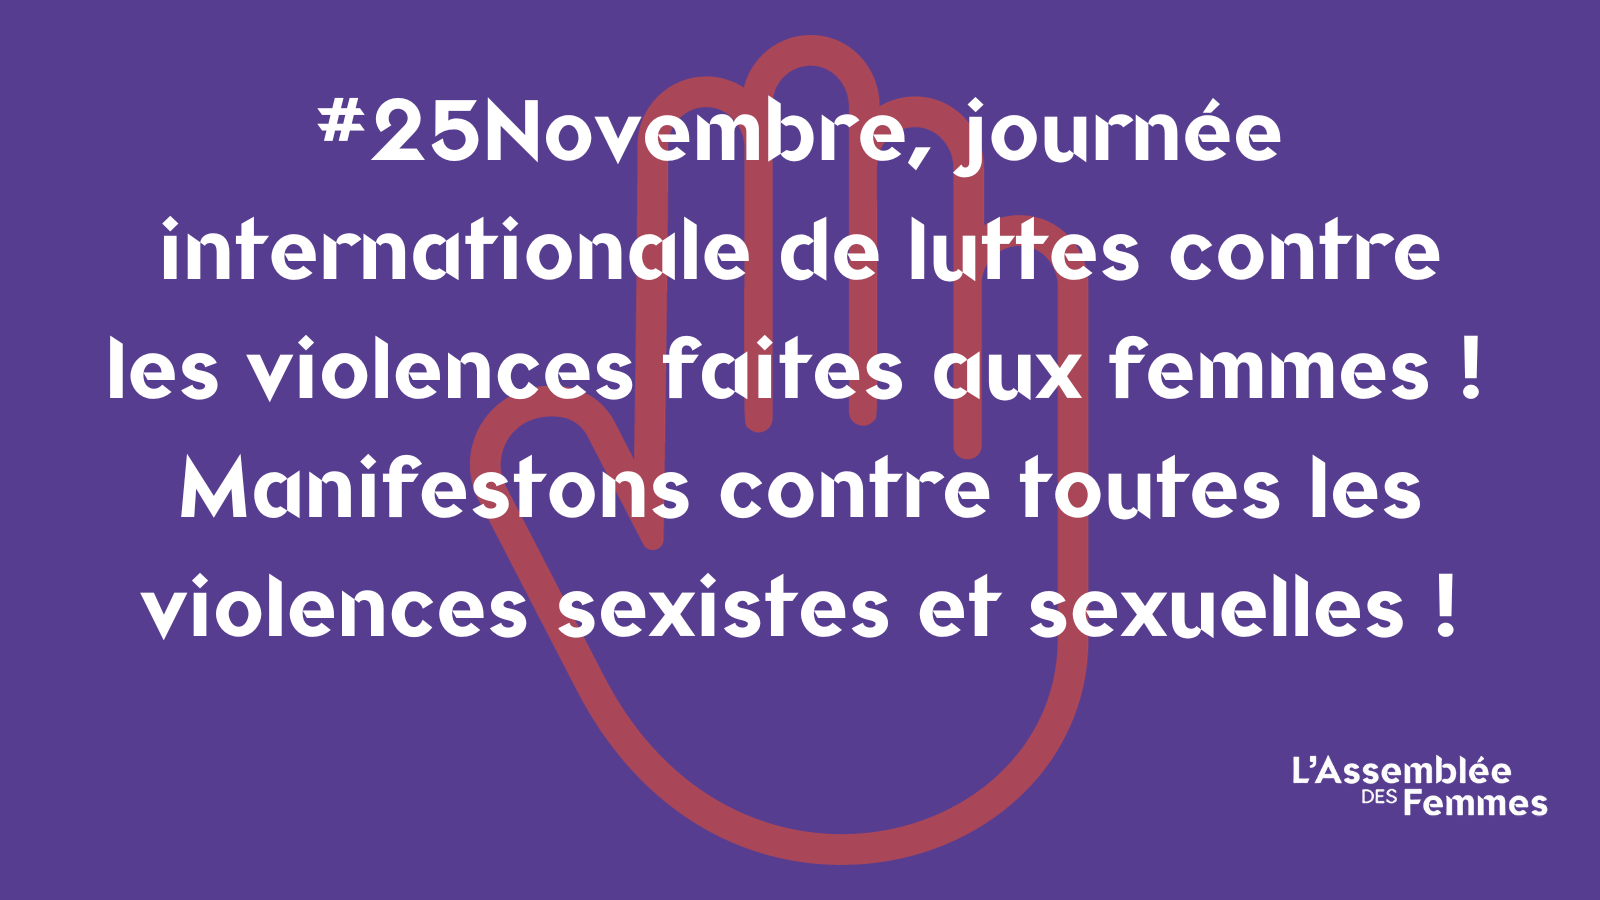 Le 25 novembre, journée internationale contreles violences faites aux femmes, manifestons contretoutes les violences sexistes et sexuelles !